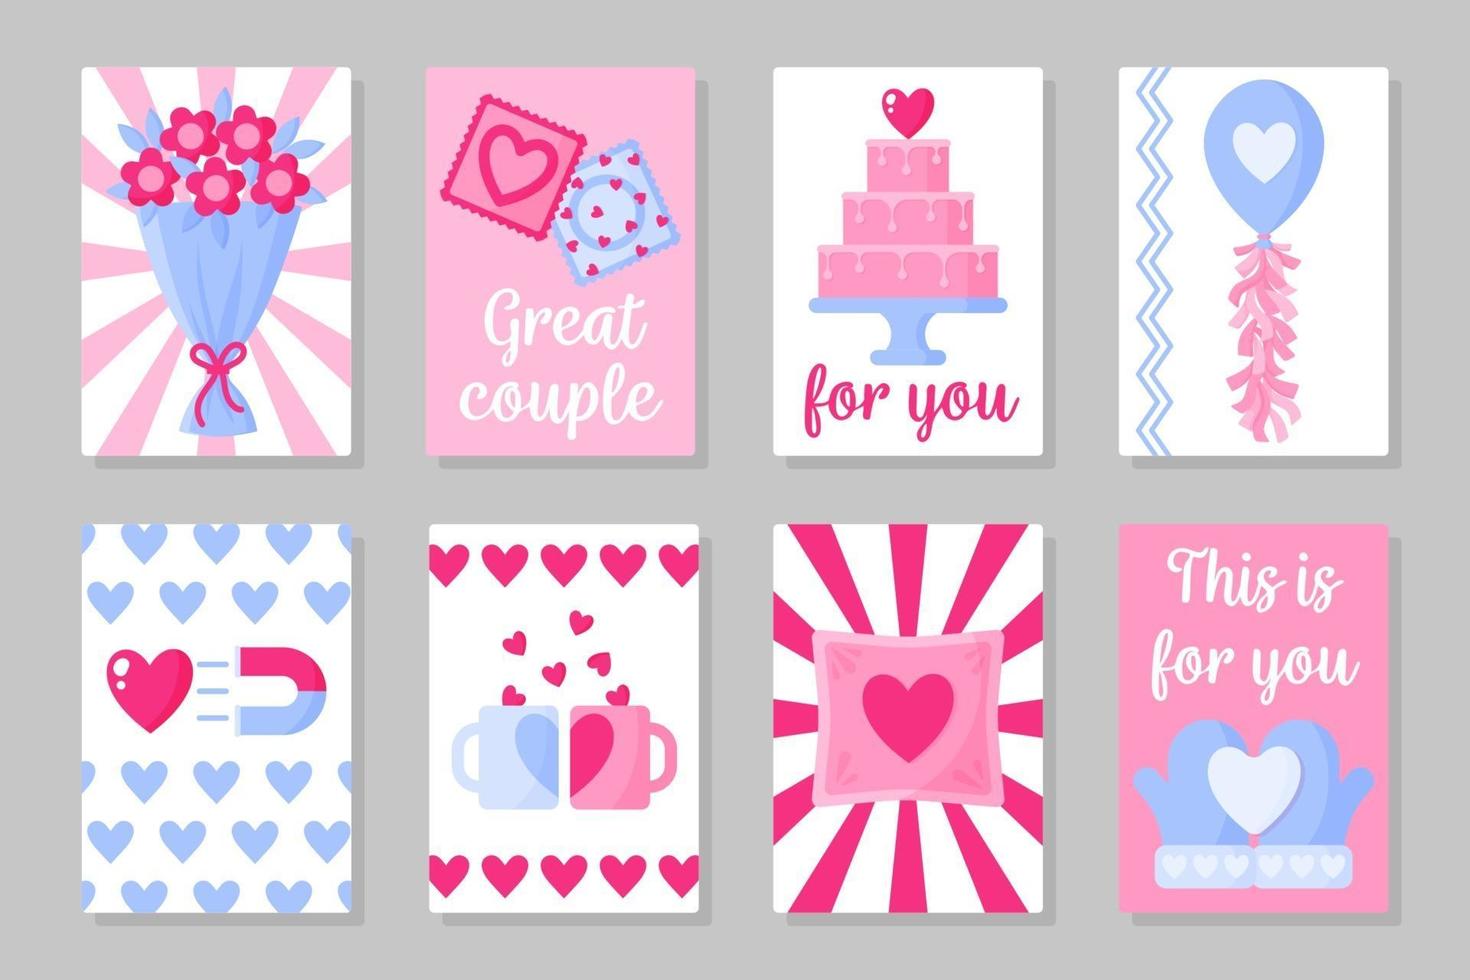 uppsättning rosa, vita och blå färgade kort för alla hjärtans dag eller bröllop. vektor platt design isolerad på grå bakgrund